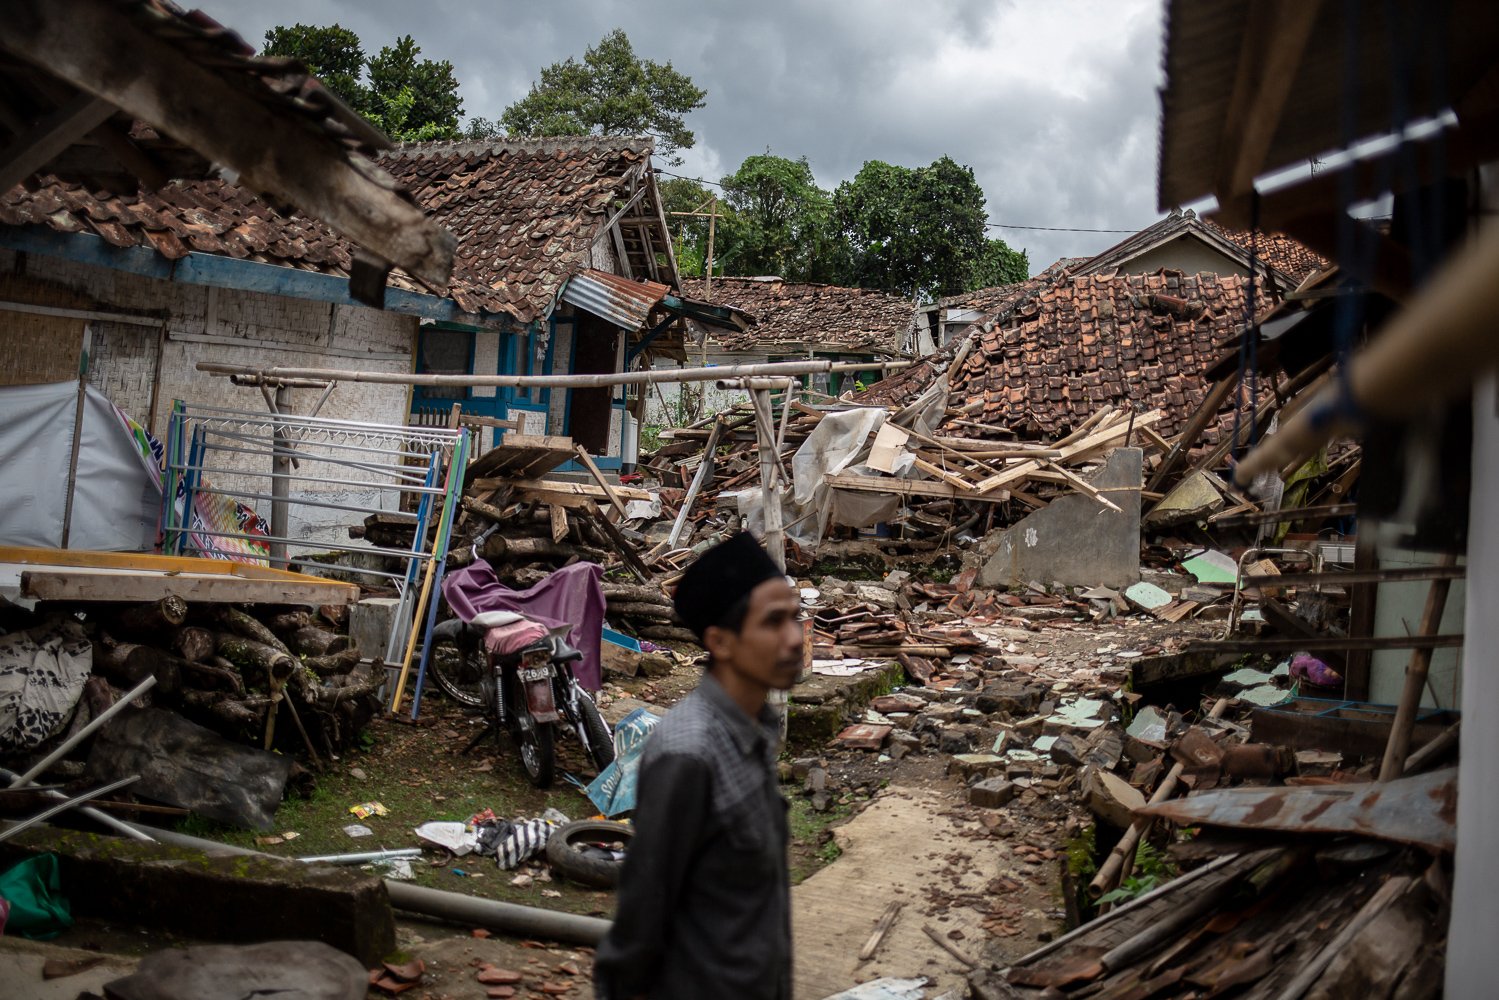 Warga mengamati bangunan rumahnya yang hancur akibat guncangan gempa bumi dengan magnitude 5.6 di Desa Mangunkerta, Cugenang, Cianjur, Jawa Barat, Sabtu (26/11). Badan Nasional Penanggulangan Bencana (BNPB) mencatat total 321 orang meninggal dunia, jumlah pengungsi hingga hari ini mencapai 73.874 orang akibat gempa di Cianjur.